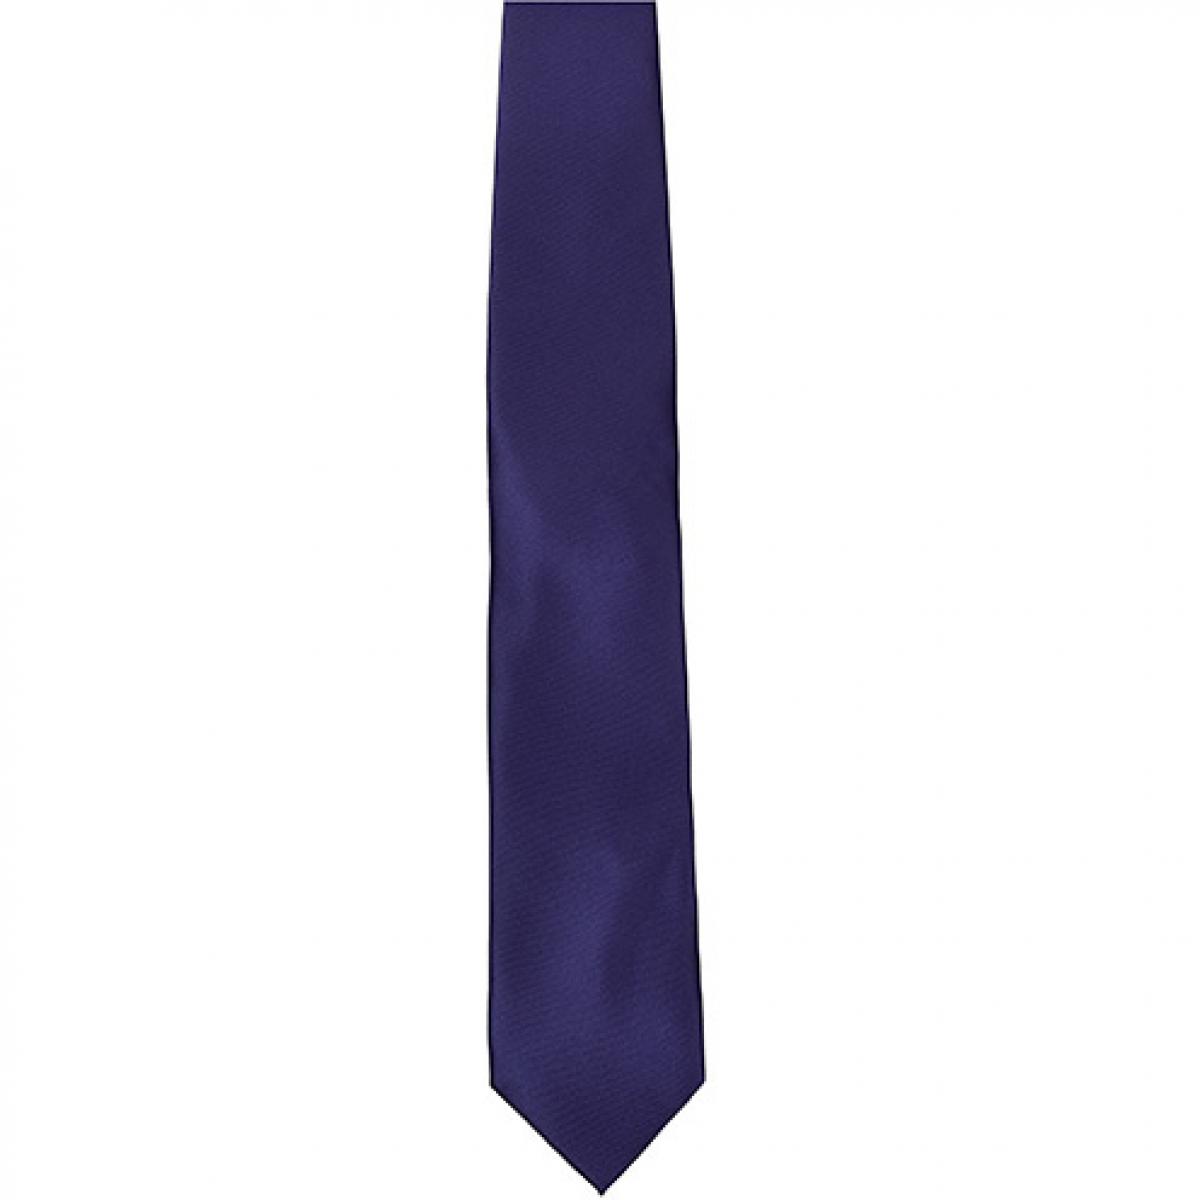 Hersteller: TYTO Herstellernummer: TT901 Artikelbezeichnung: Satin Tie / 144 x 8,5cm /  Zu 100% von Hand genäht Farbe: Purple